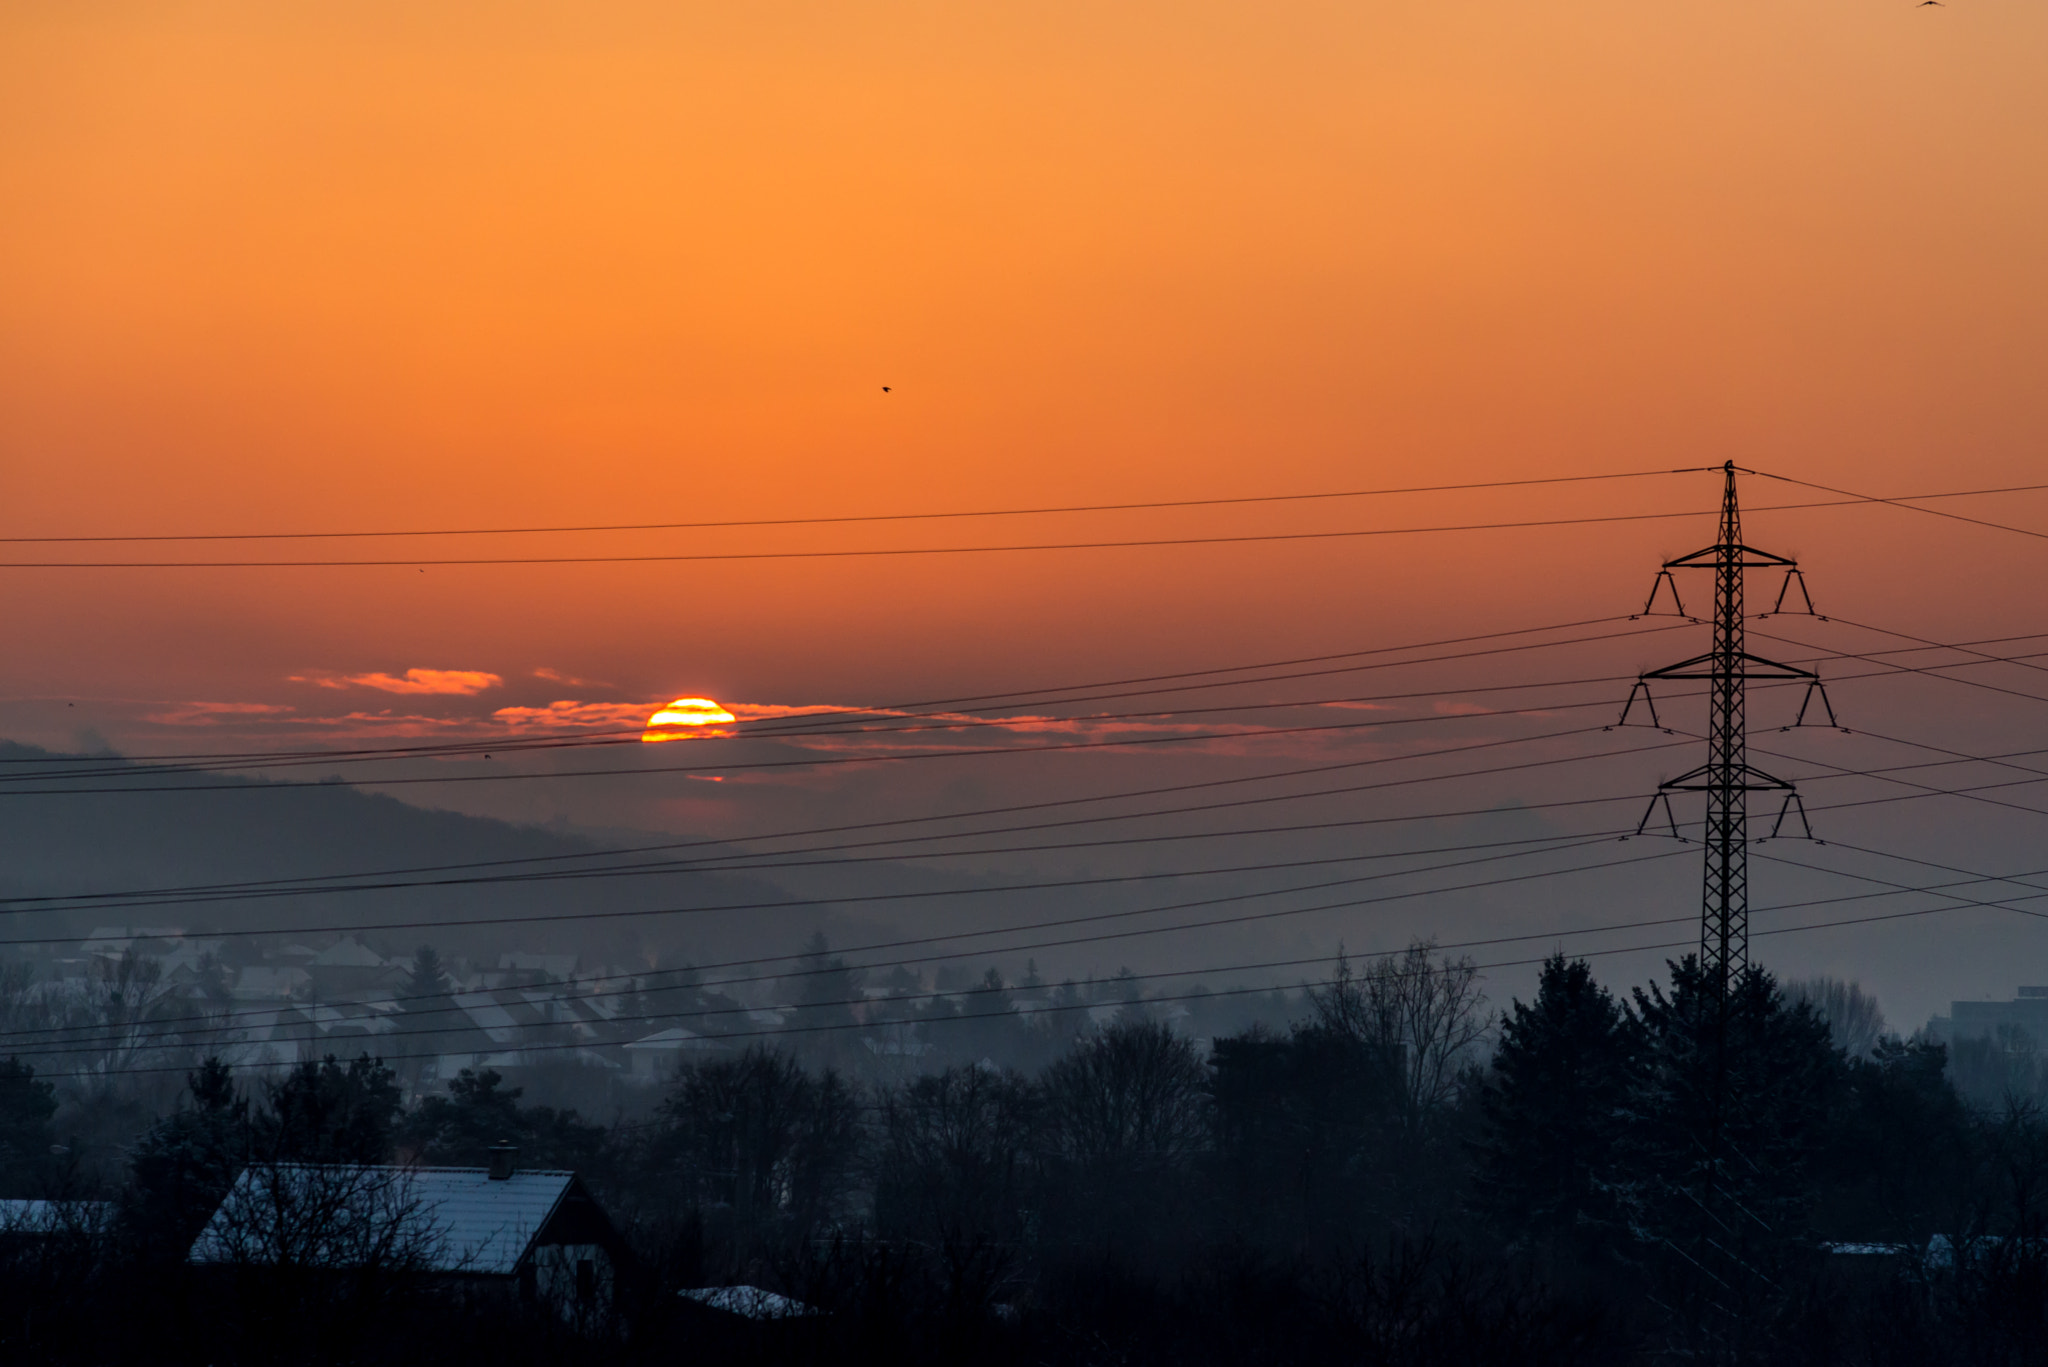 Nikon D610 + AF Nikkor 180mm f/2.8 IF-ED sample photo. Winter sunrise over bratislava photography